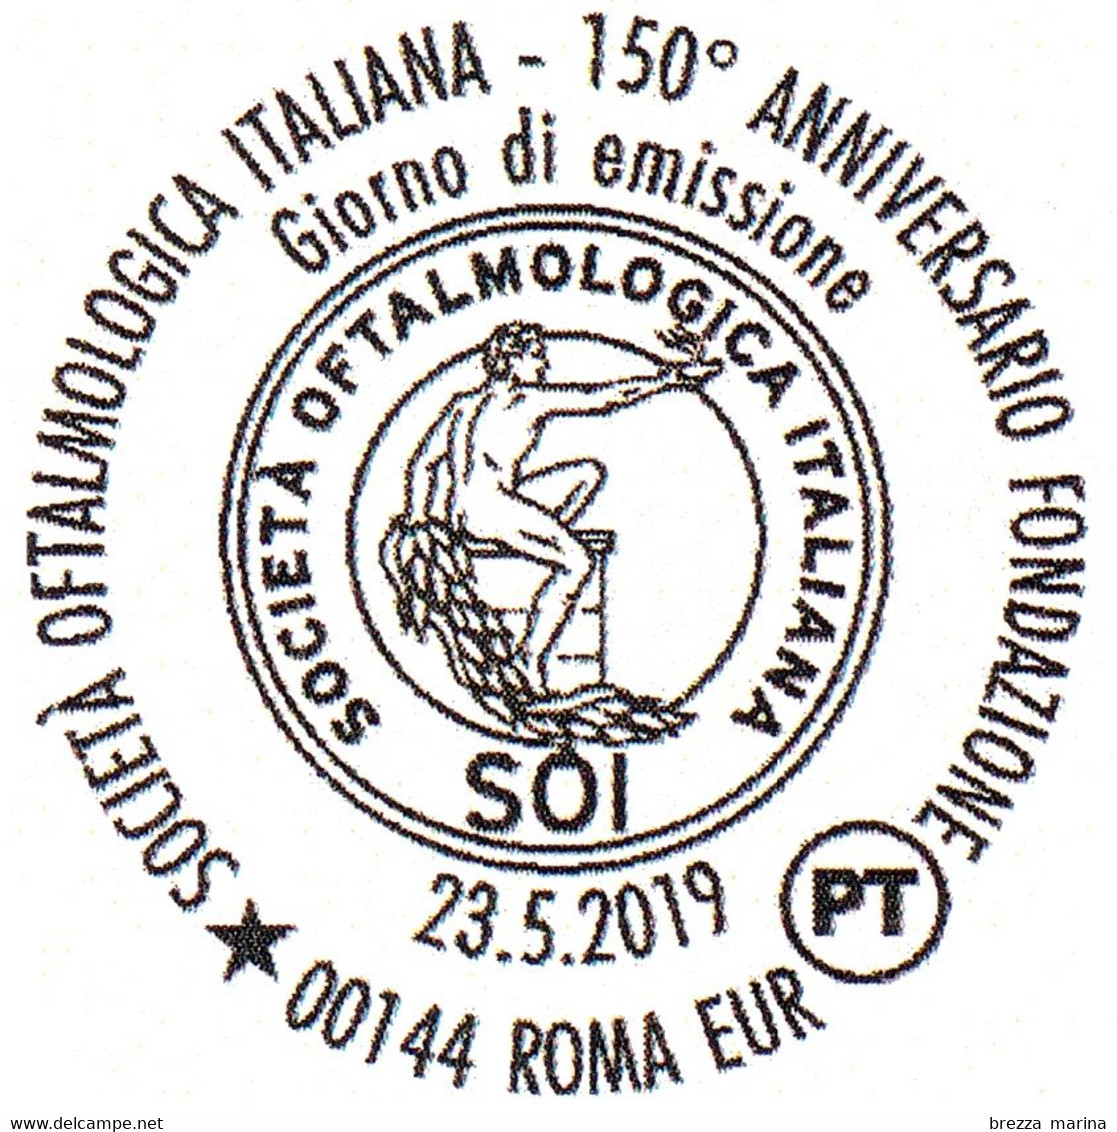 ITALIA - Usato - 2019 - 150 Anni Della Società Oftalmologica - SOI - Logo - Occhio - B - 2011-20: Used